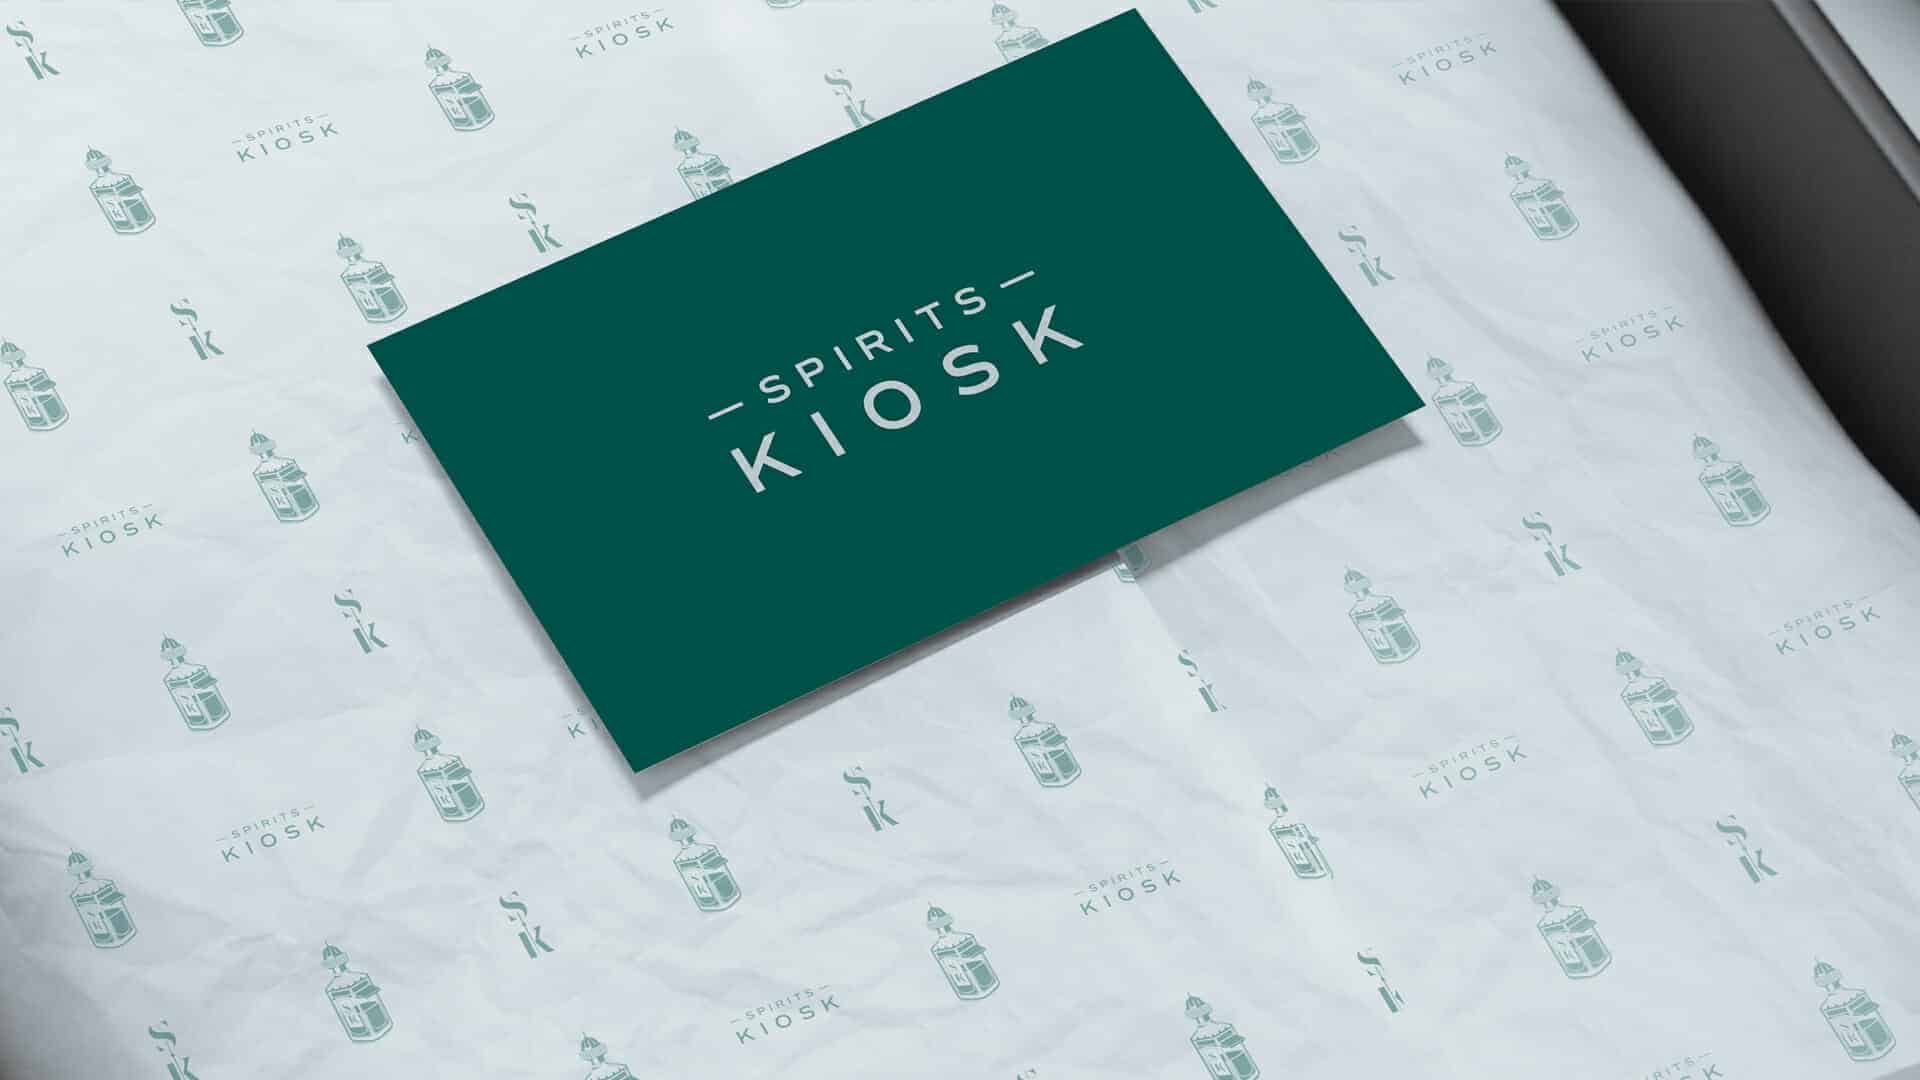 Spirits-Kiosk-Packaging-Design